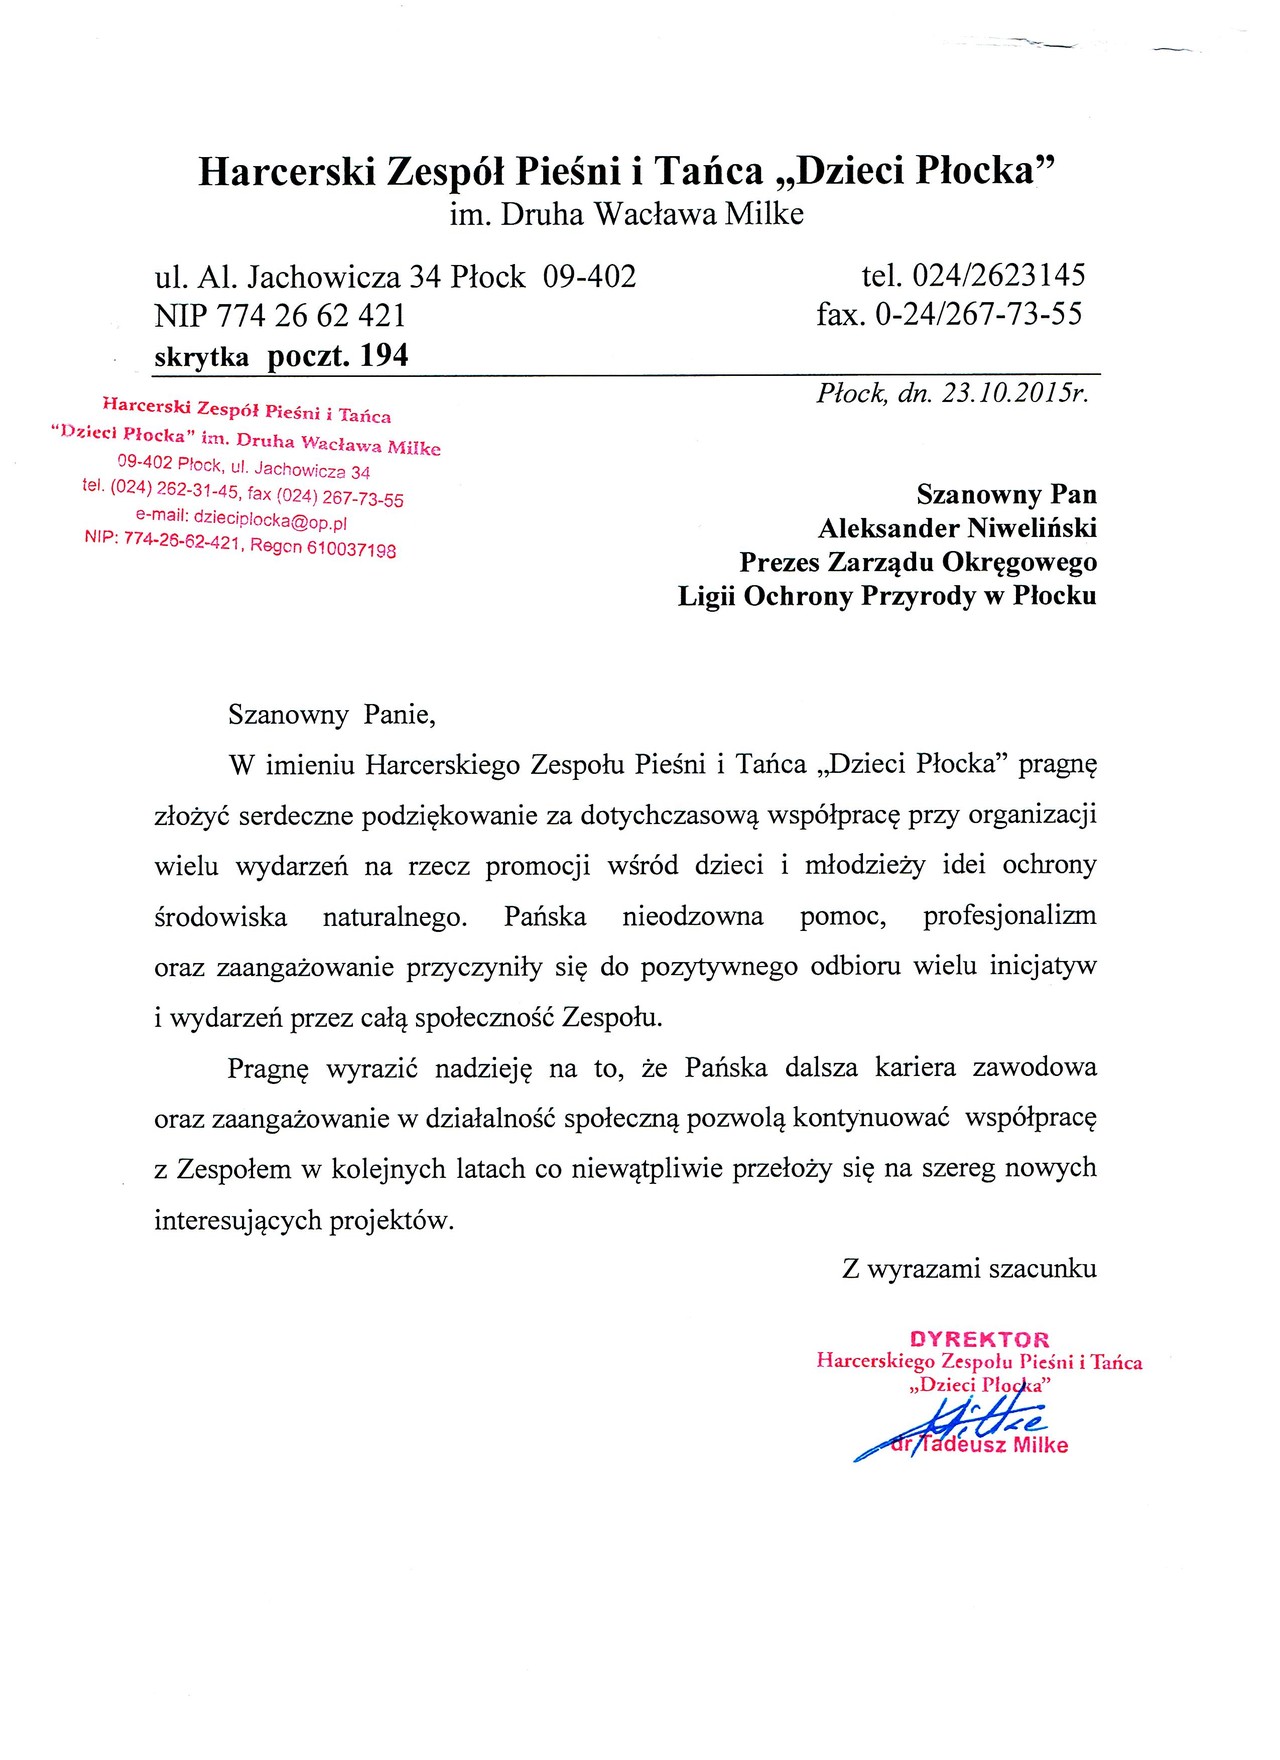 Acknowledgements Aleksander Niweliński - Dzieci Płocka